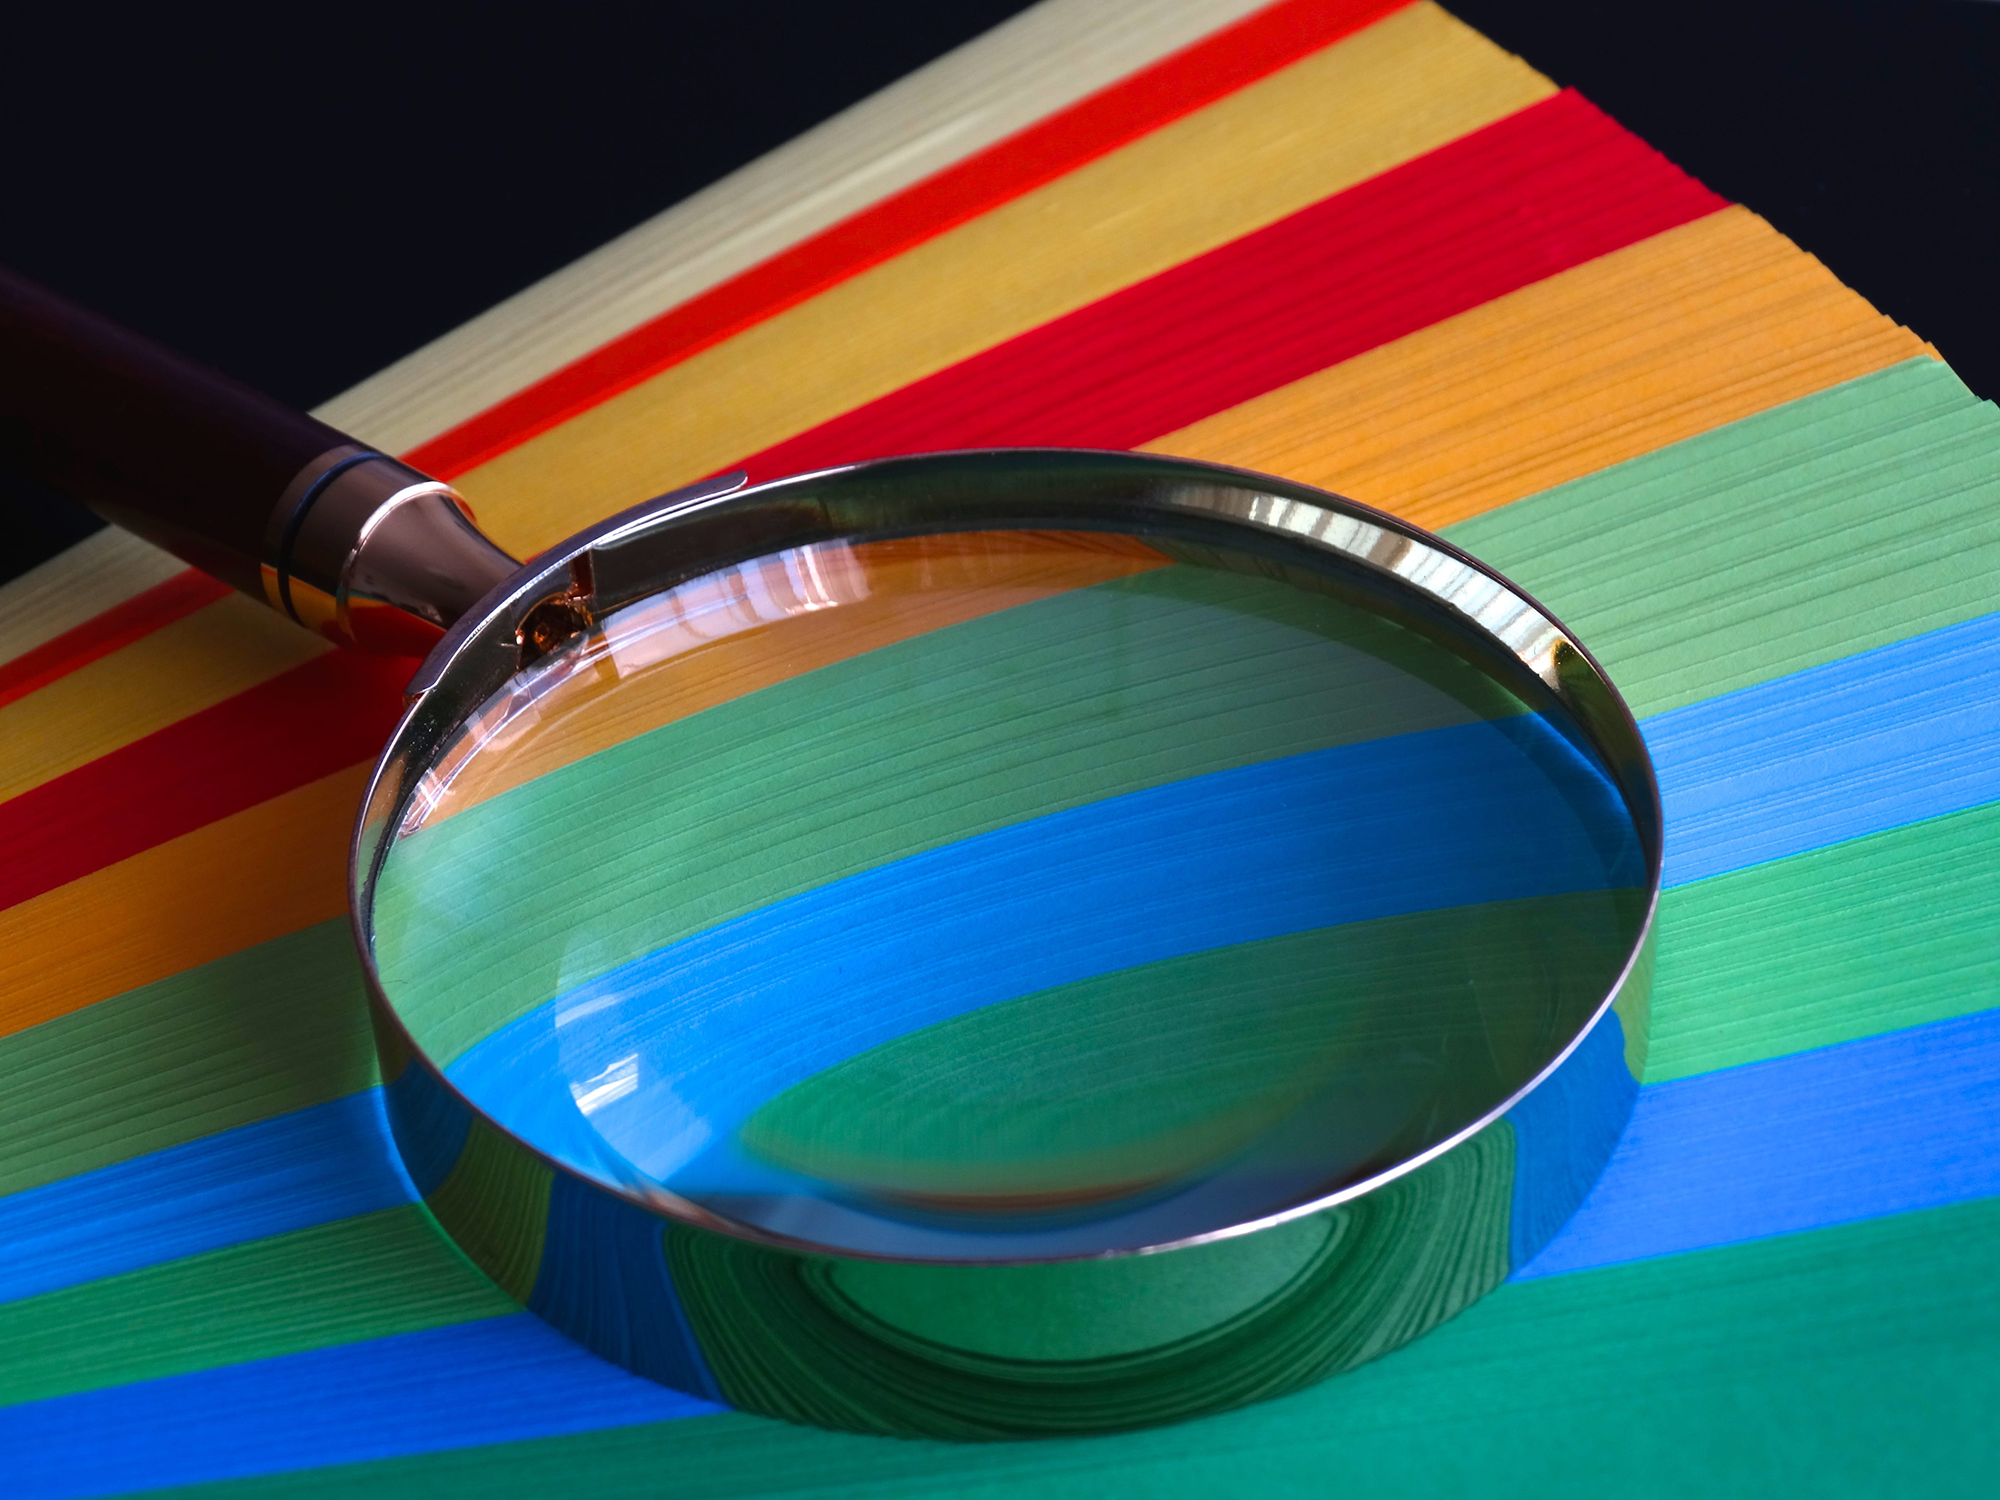 Ett förstoringsglas ligger ovanpå papper i olika färger formade som en solfjäder.